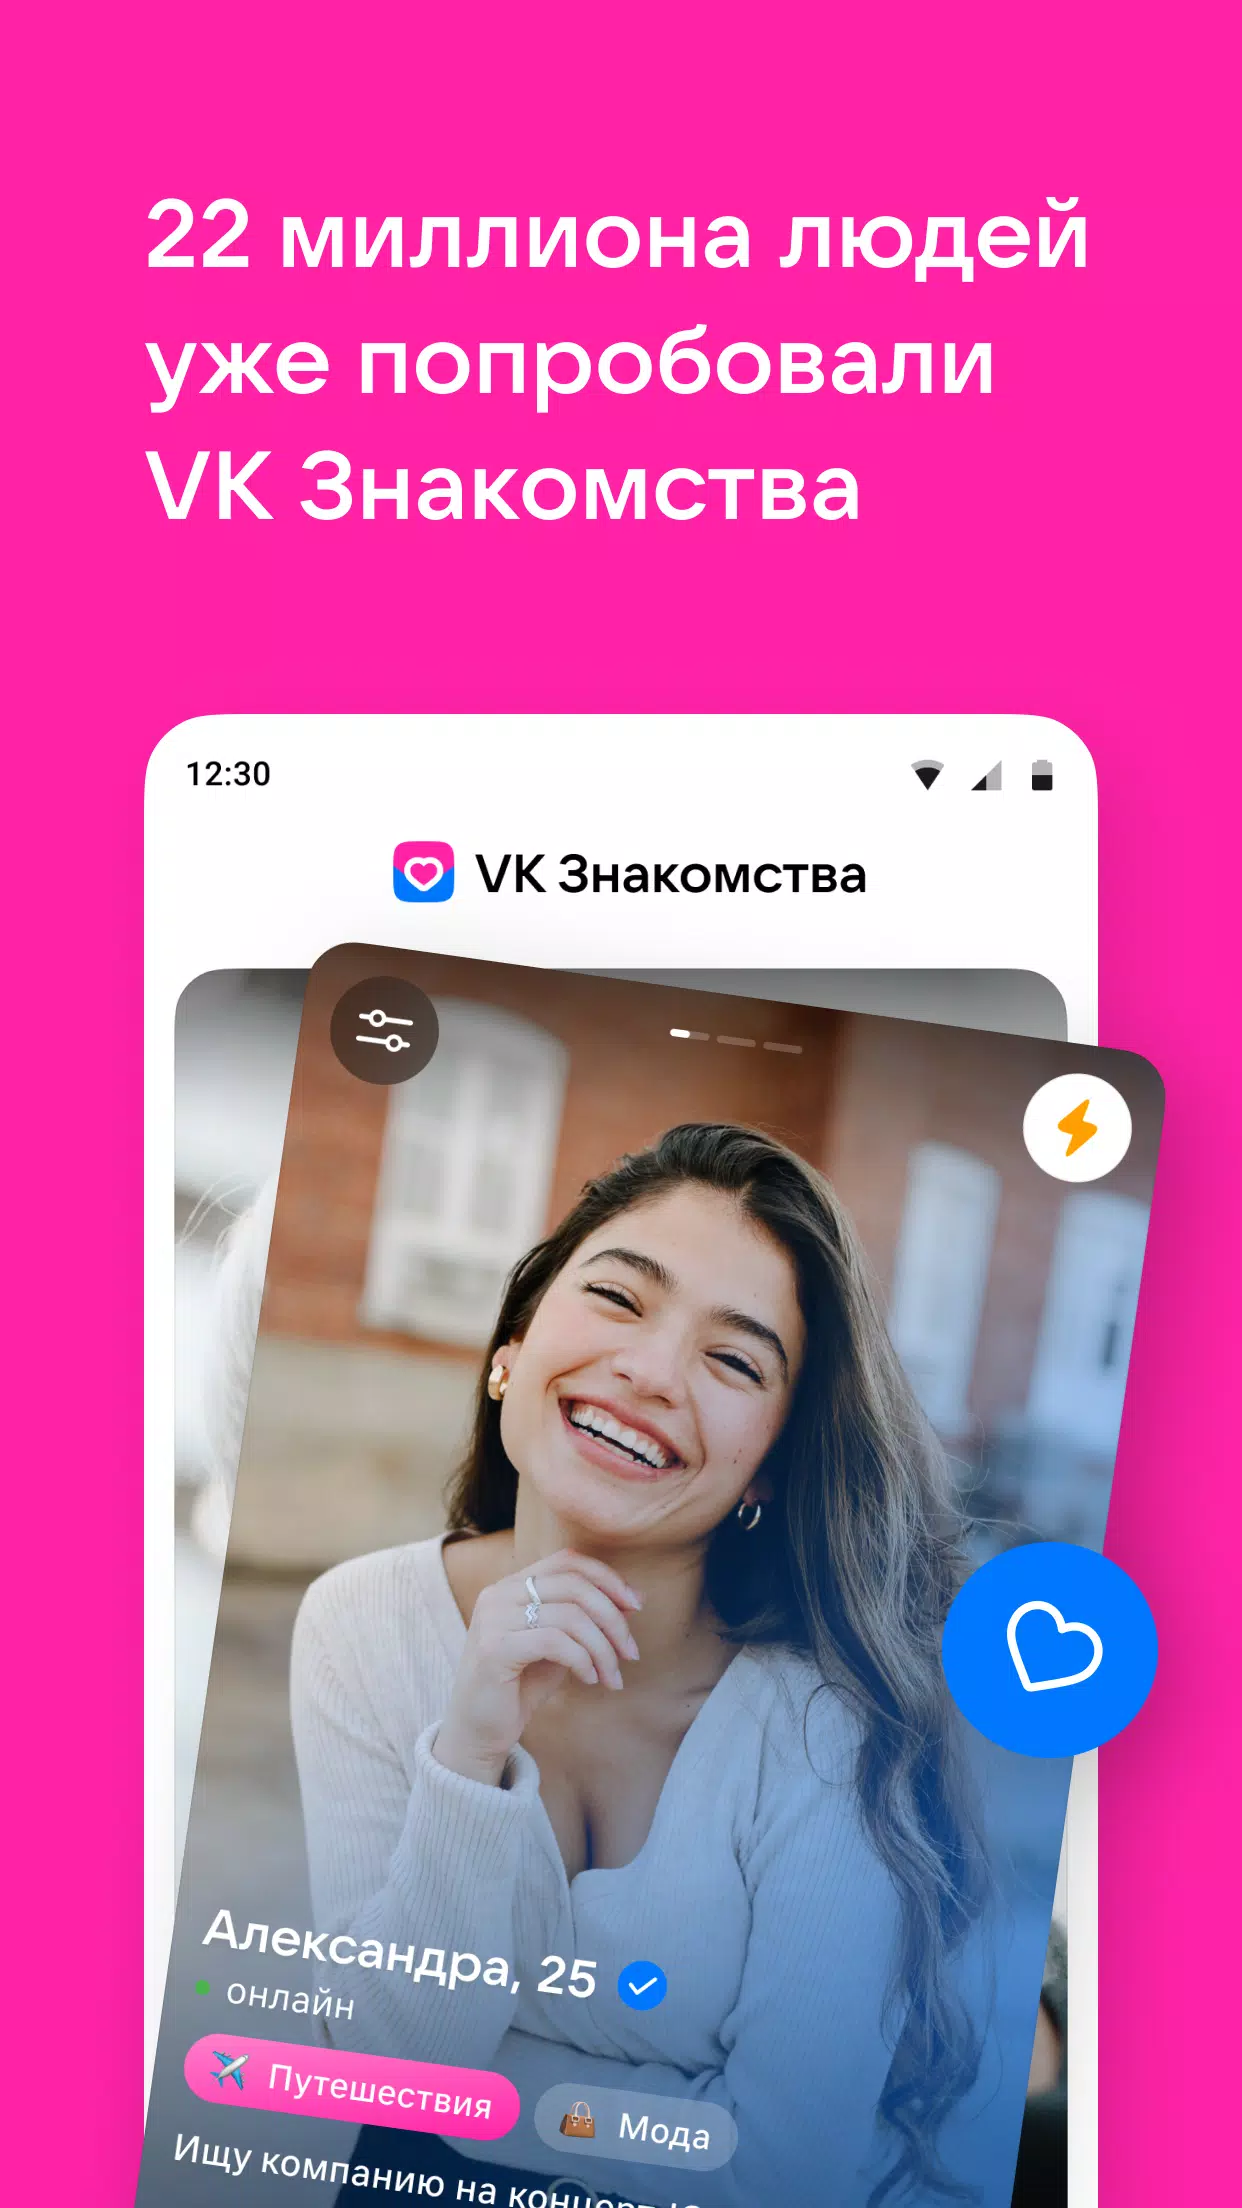 VK: red social, mensajero - Aplicaciones en Google Play